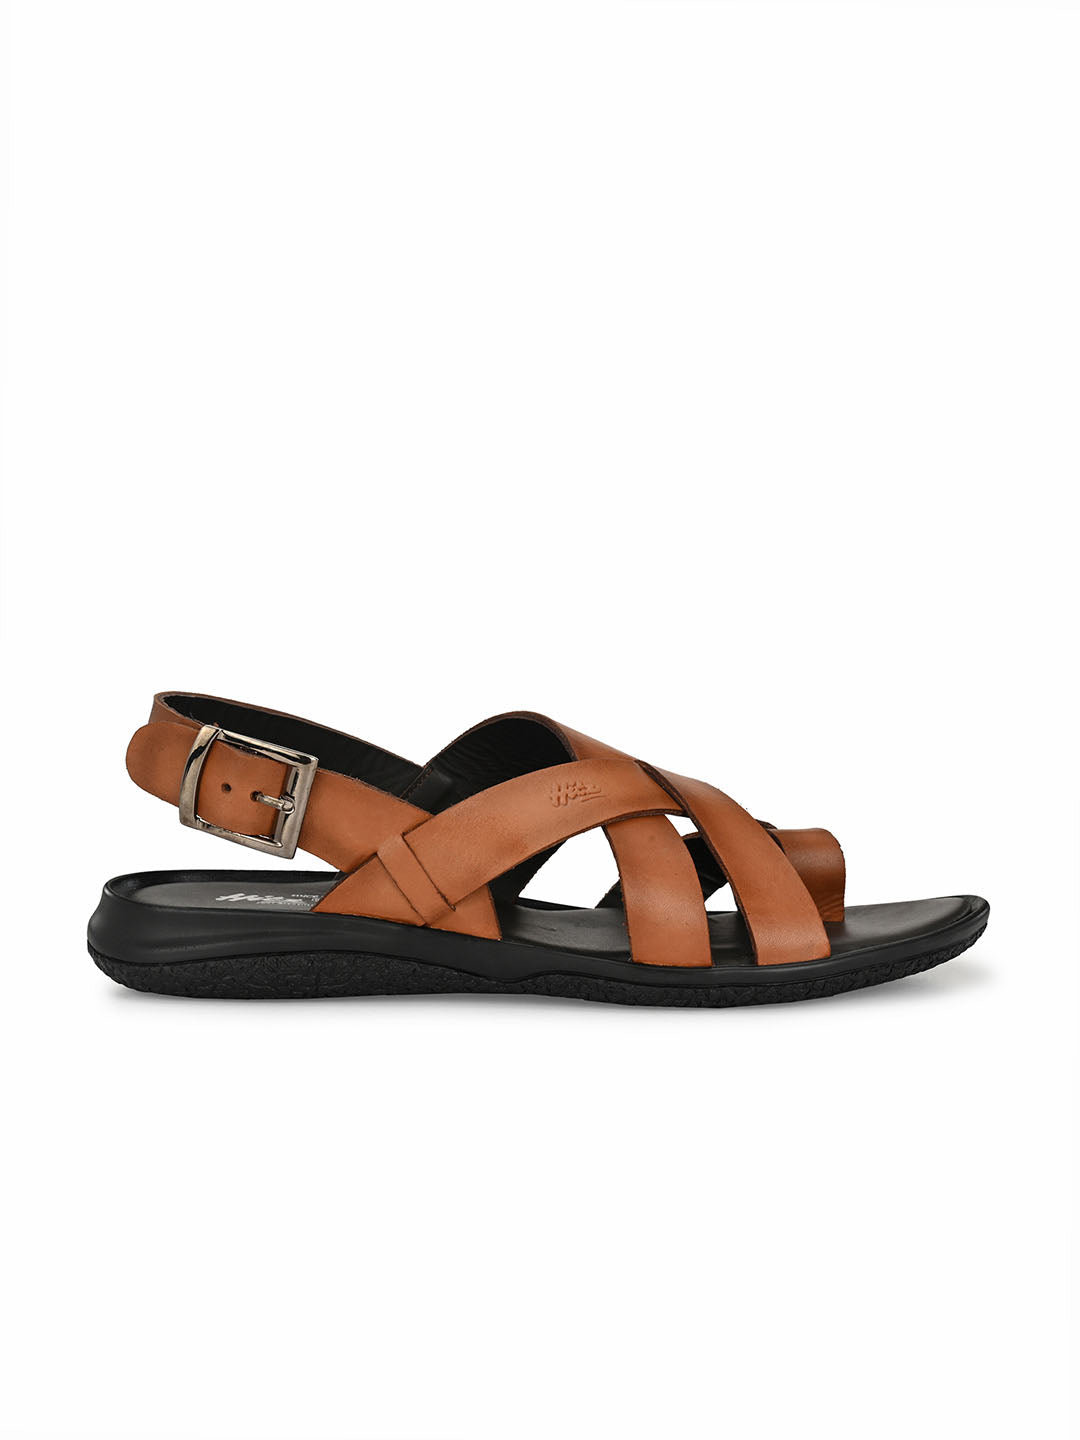 Mochi Men's Black Toe-ring Slipper Stylish Sandals UK/6 EU/40 (16-829) :  Amazon.in: Fashion